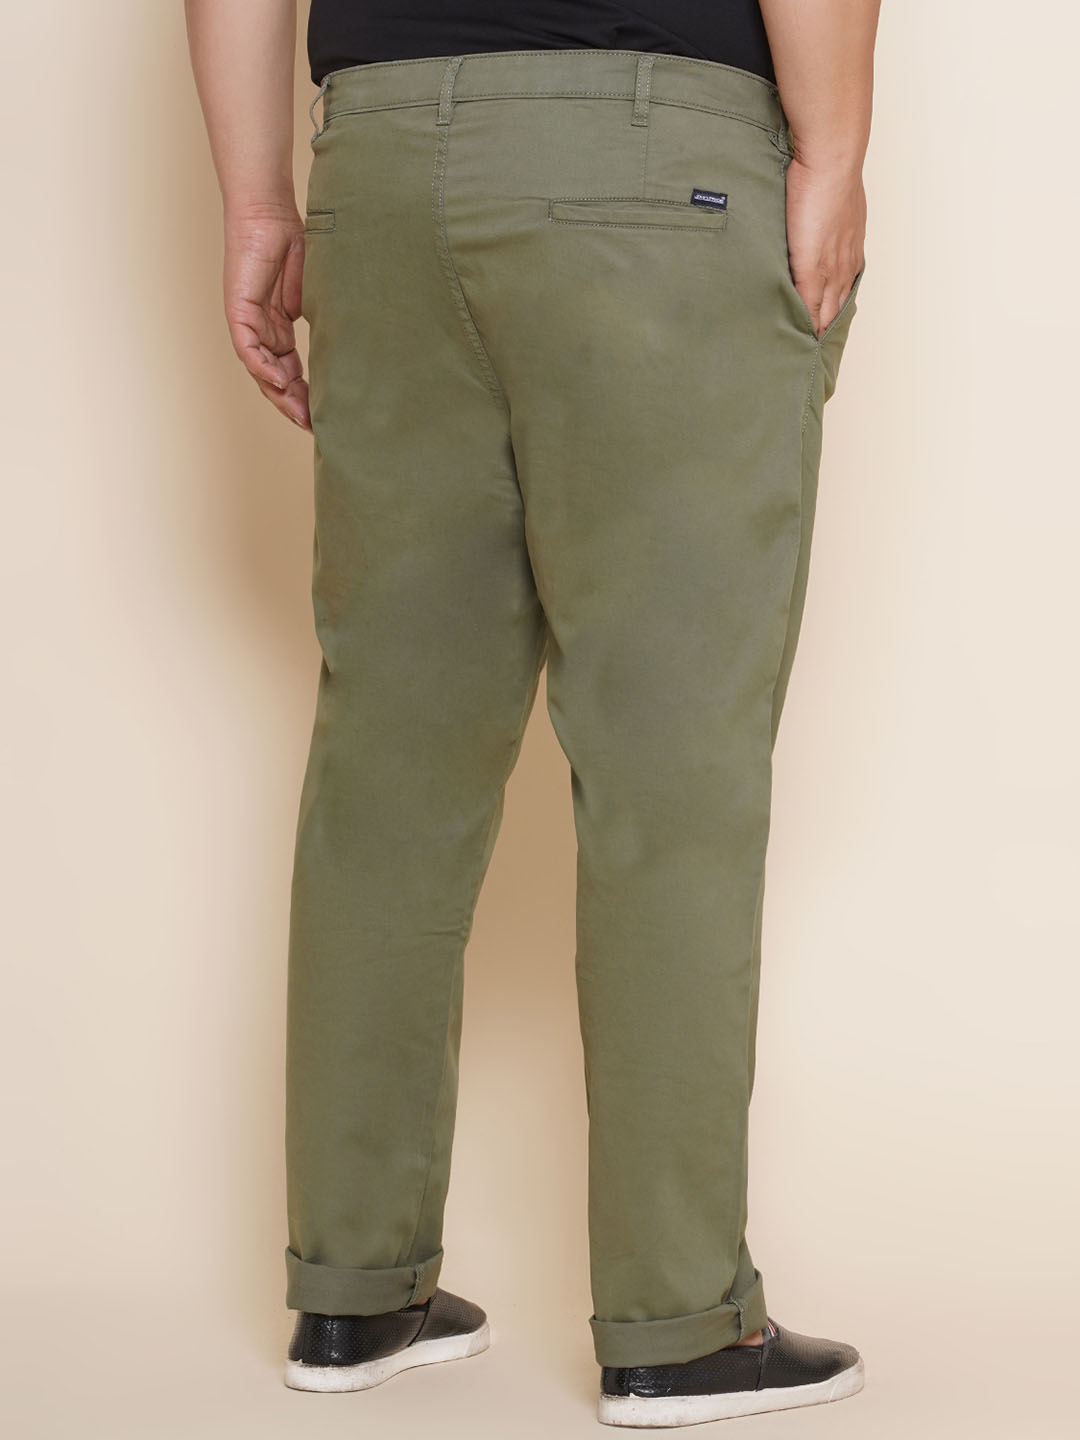 bottomwear/trousers/JPTR21011/jptr21011-5.jpg